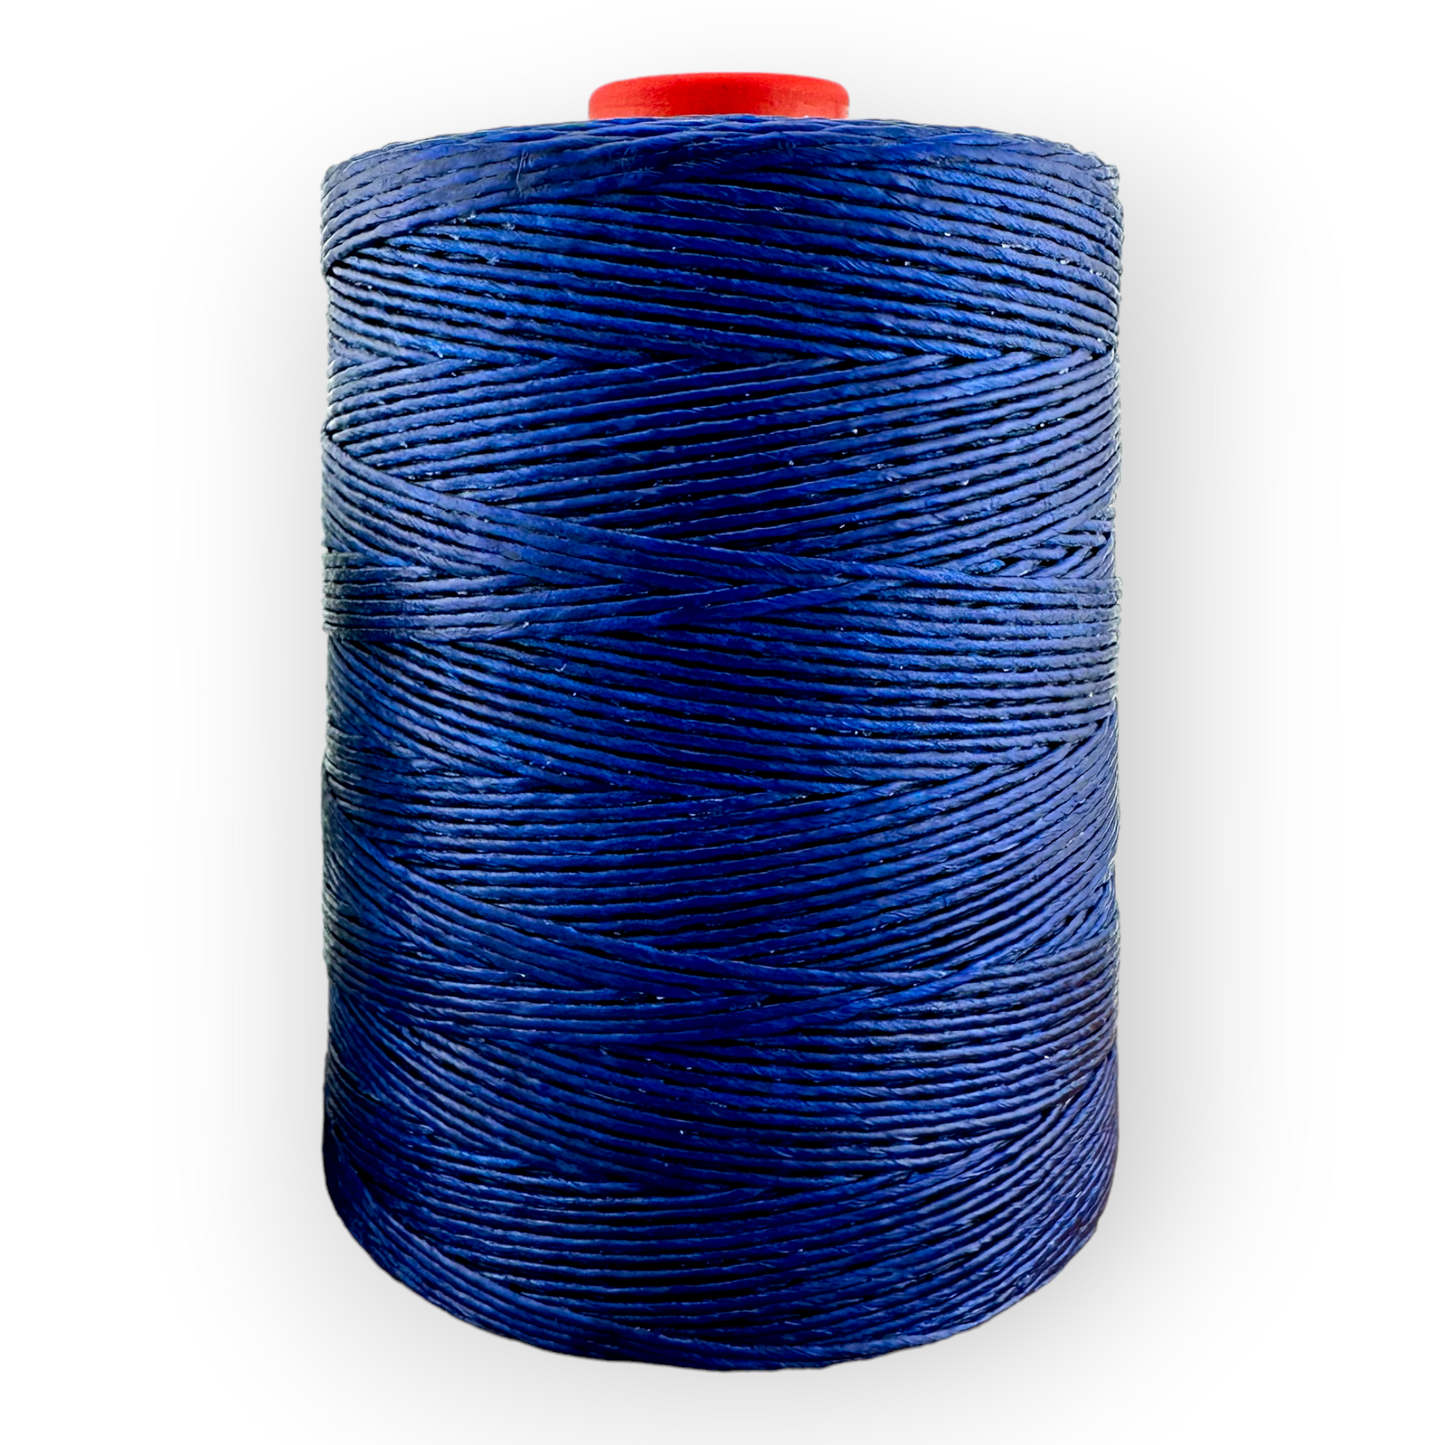 600 Meter Macrame Cord Spool - Dark Blue